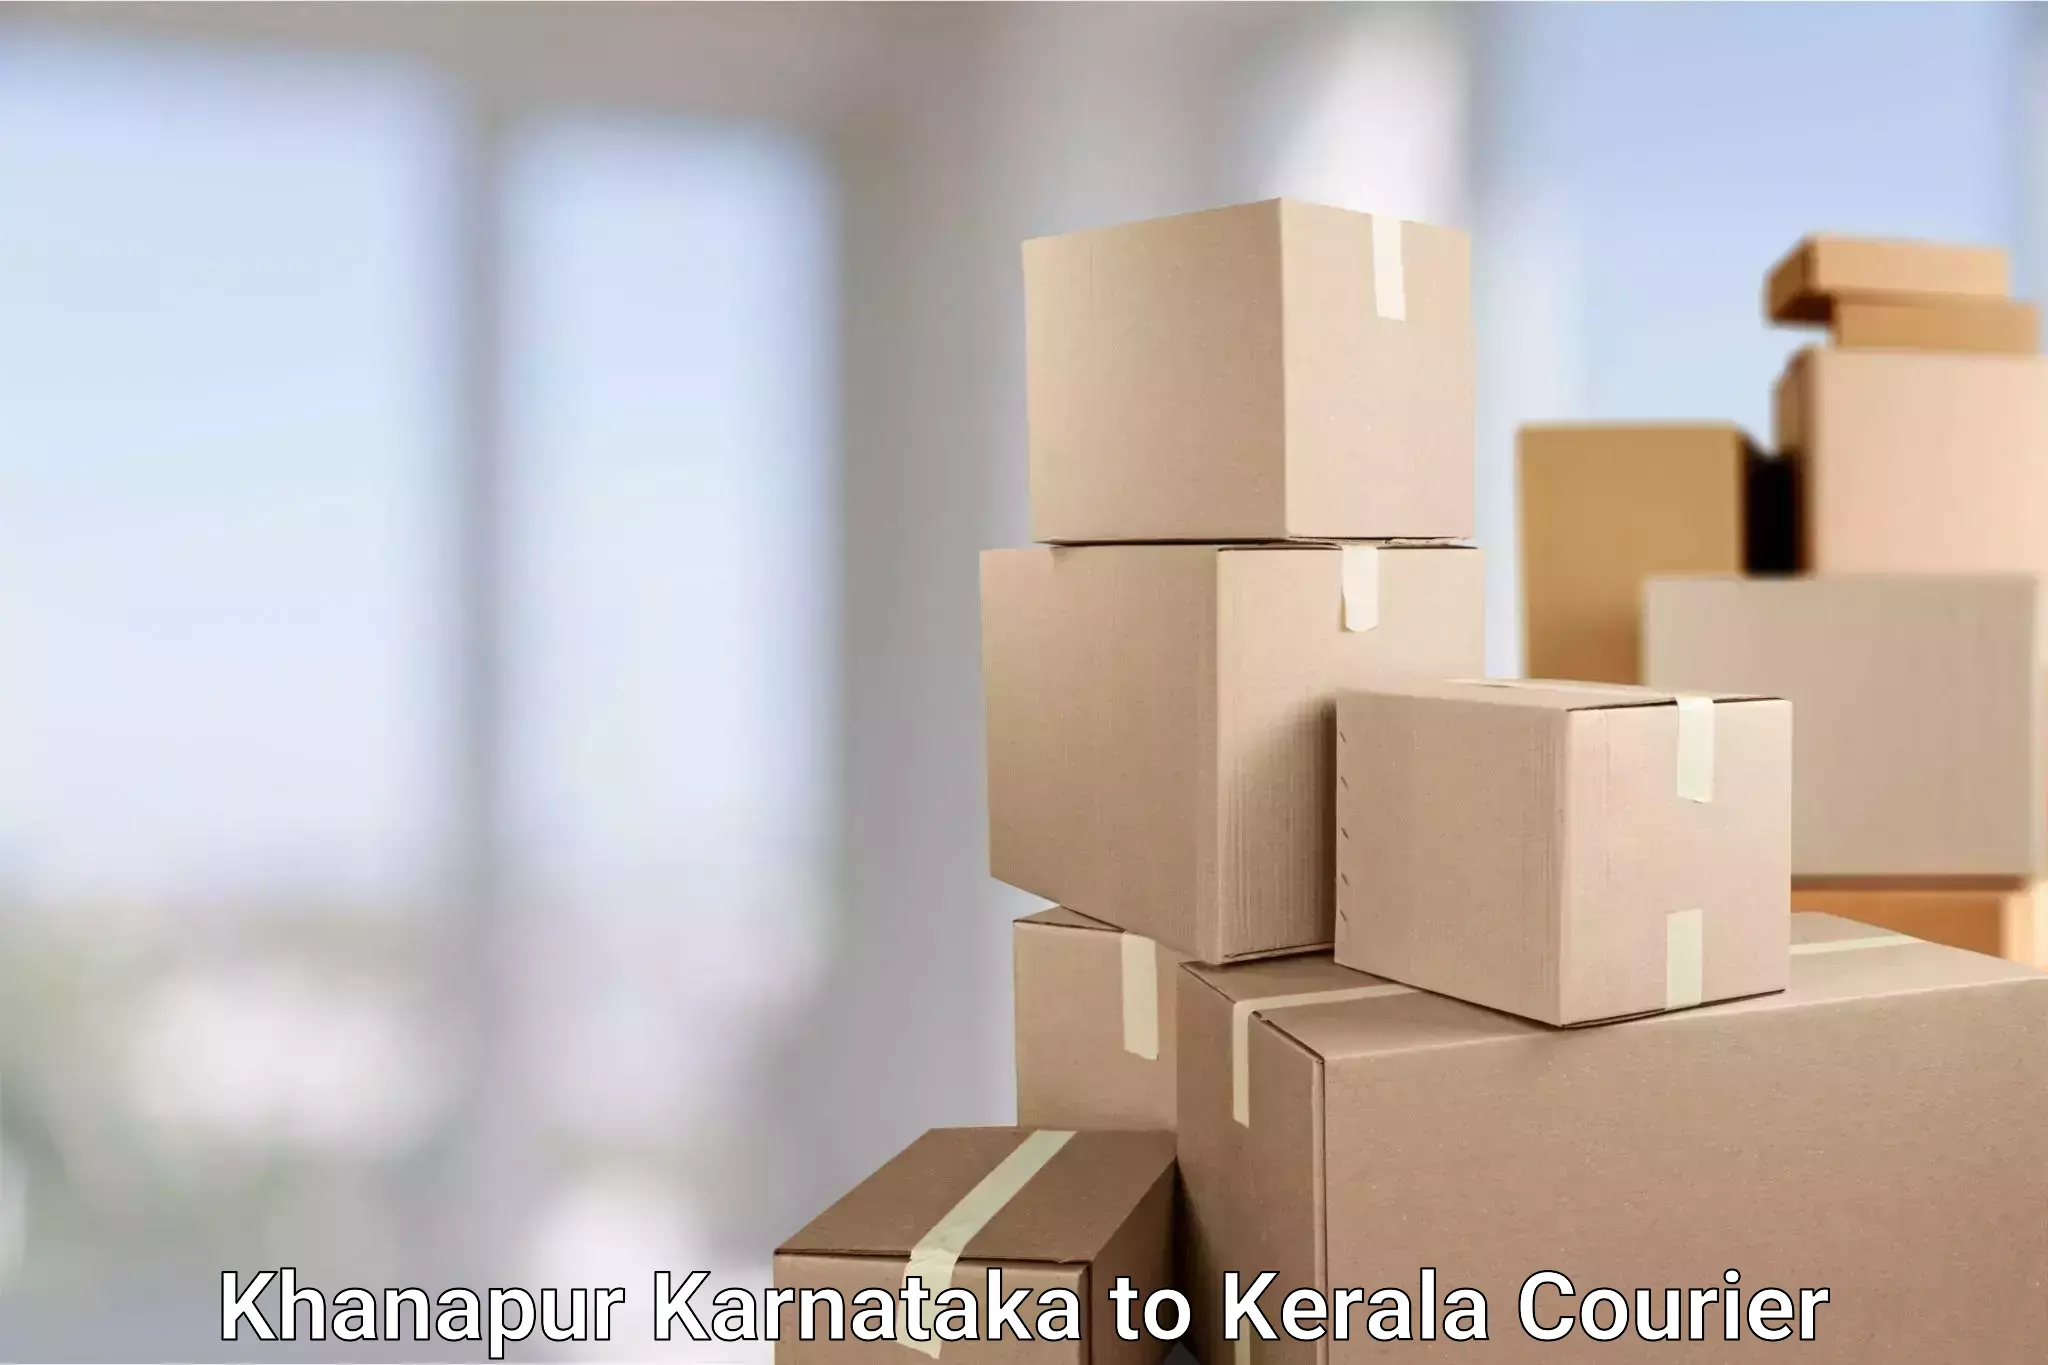 Customized delivery solutions Khanapur Karnataka to Kattappana